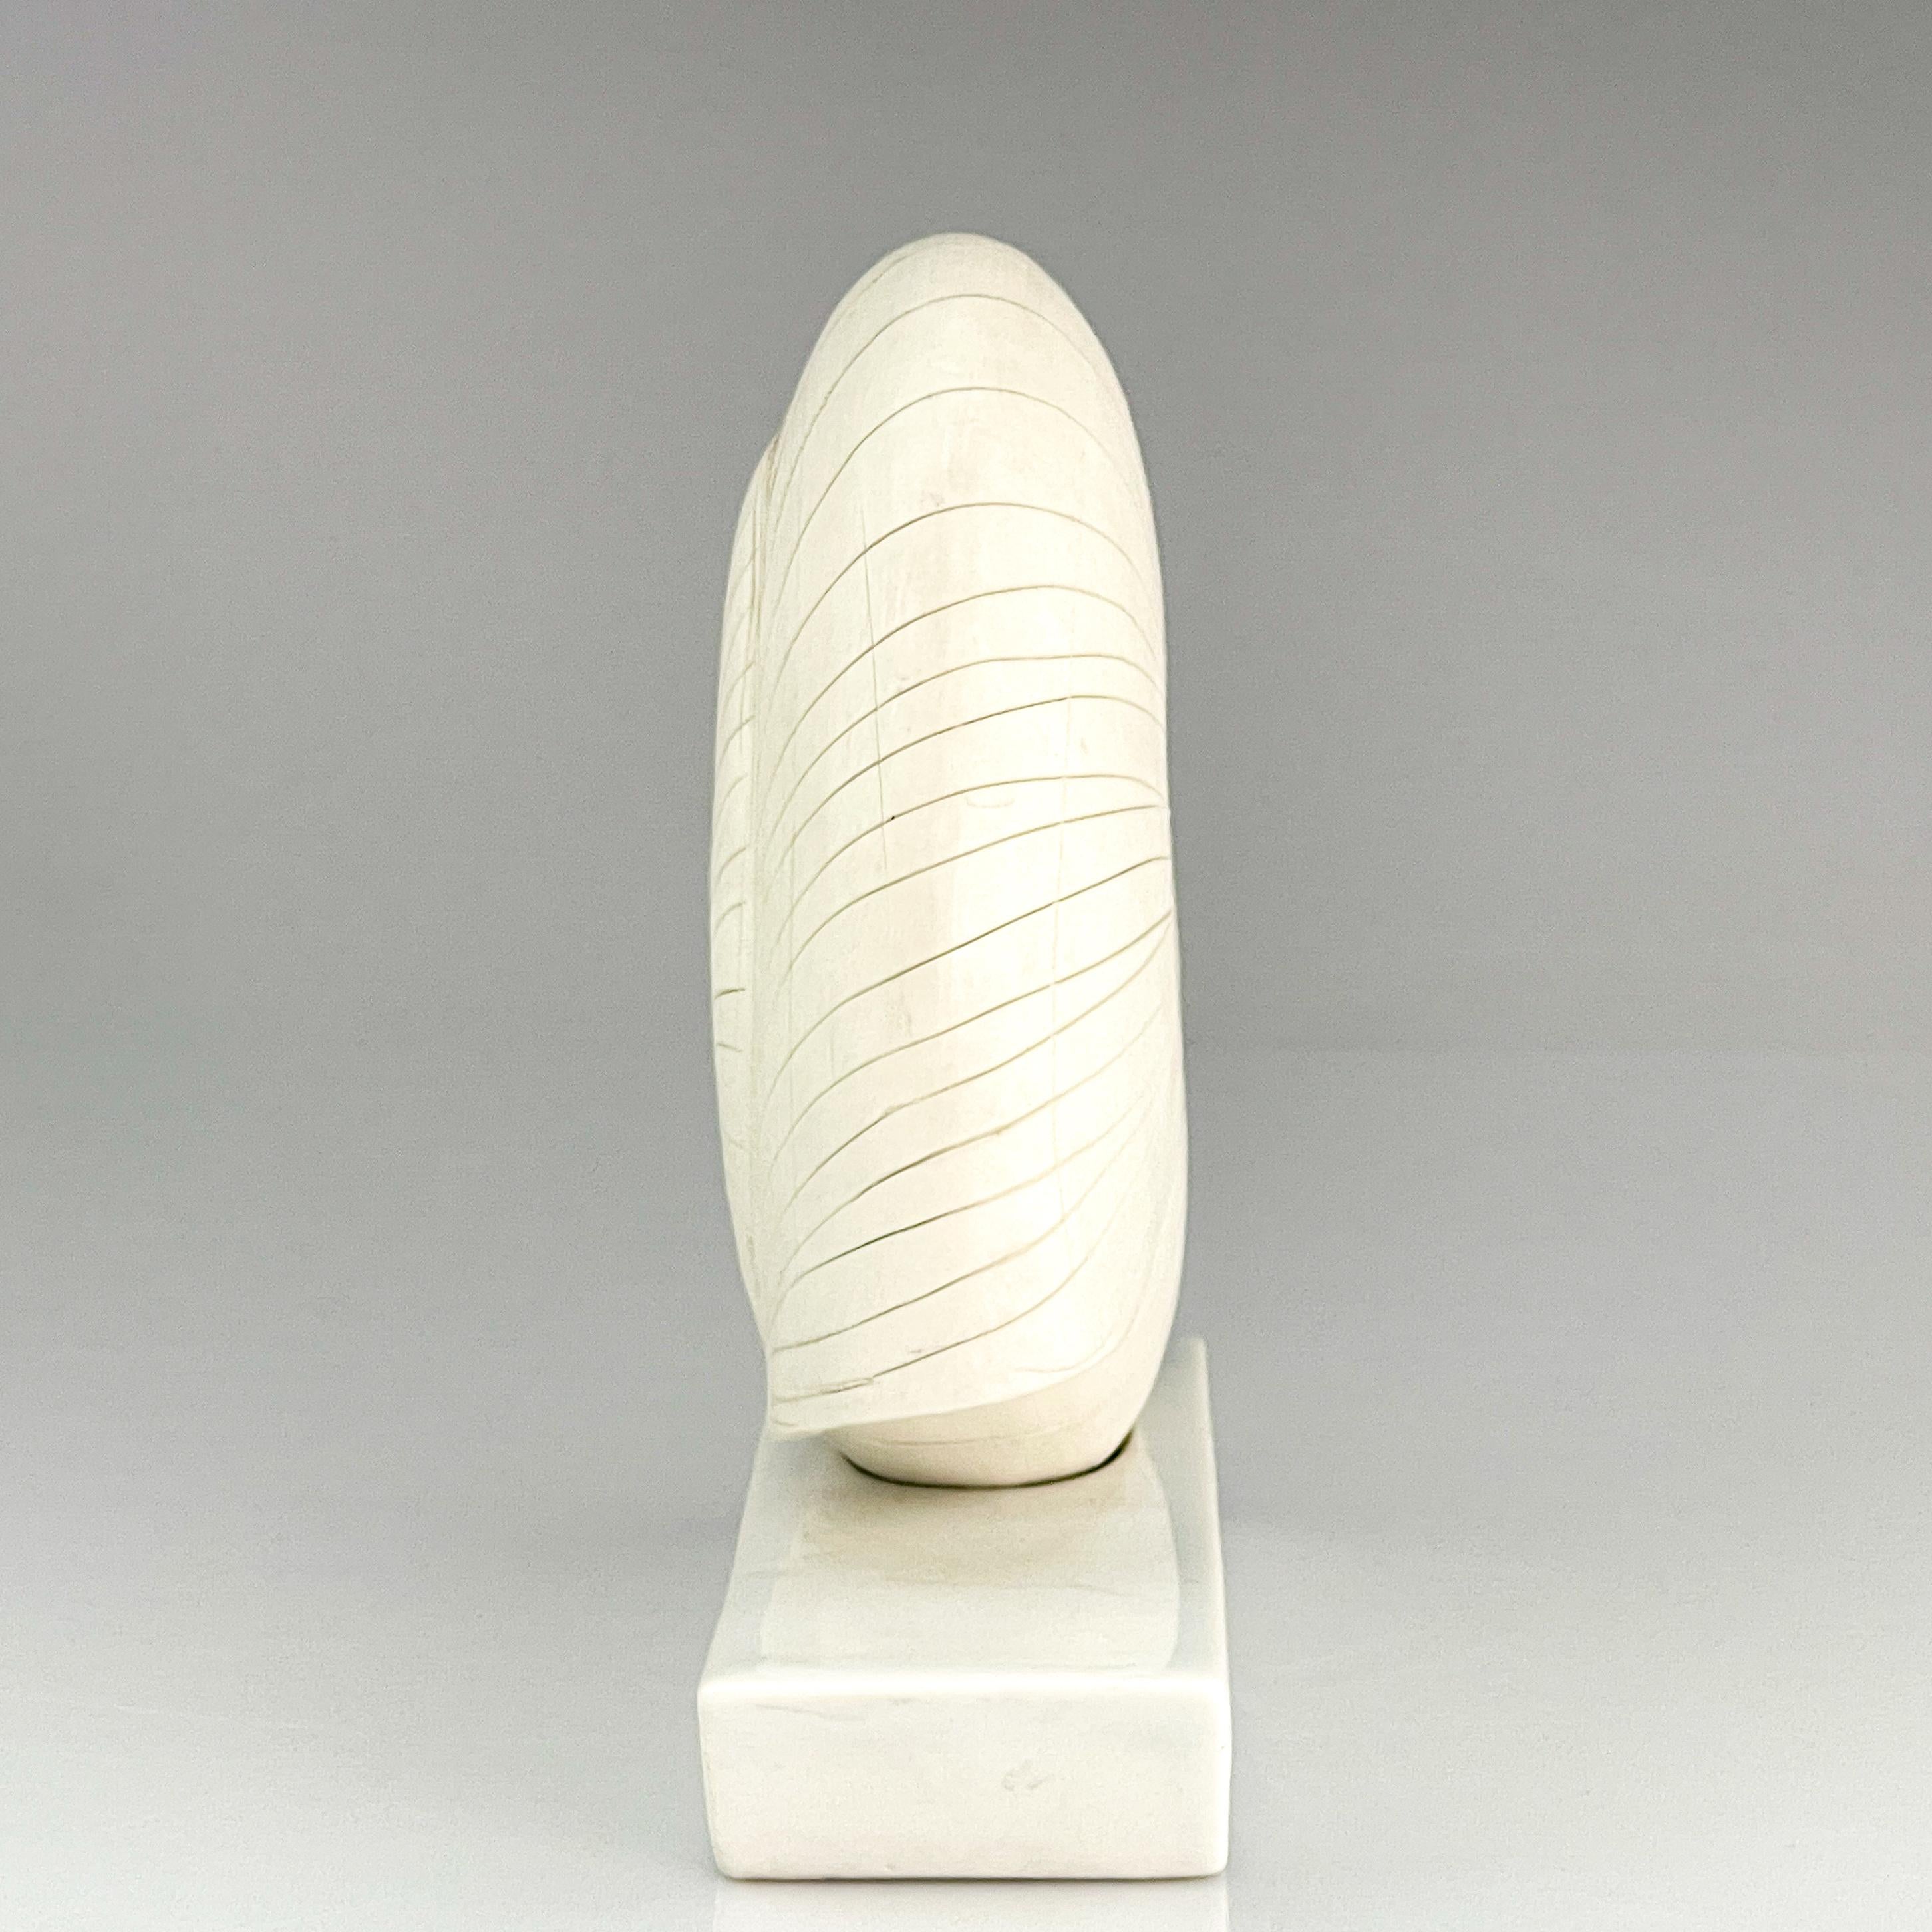 Finnish Gunvor Olin-Grönqvist Scandinavian Modern Stoneware Sculpture Shell Handmade For Sale